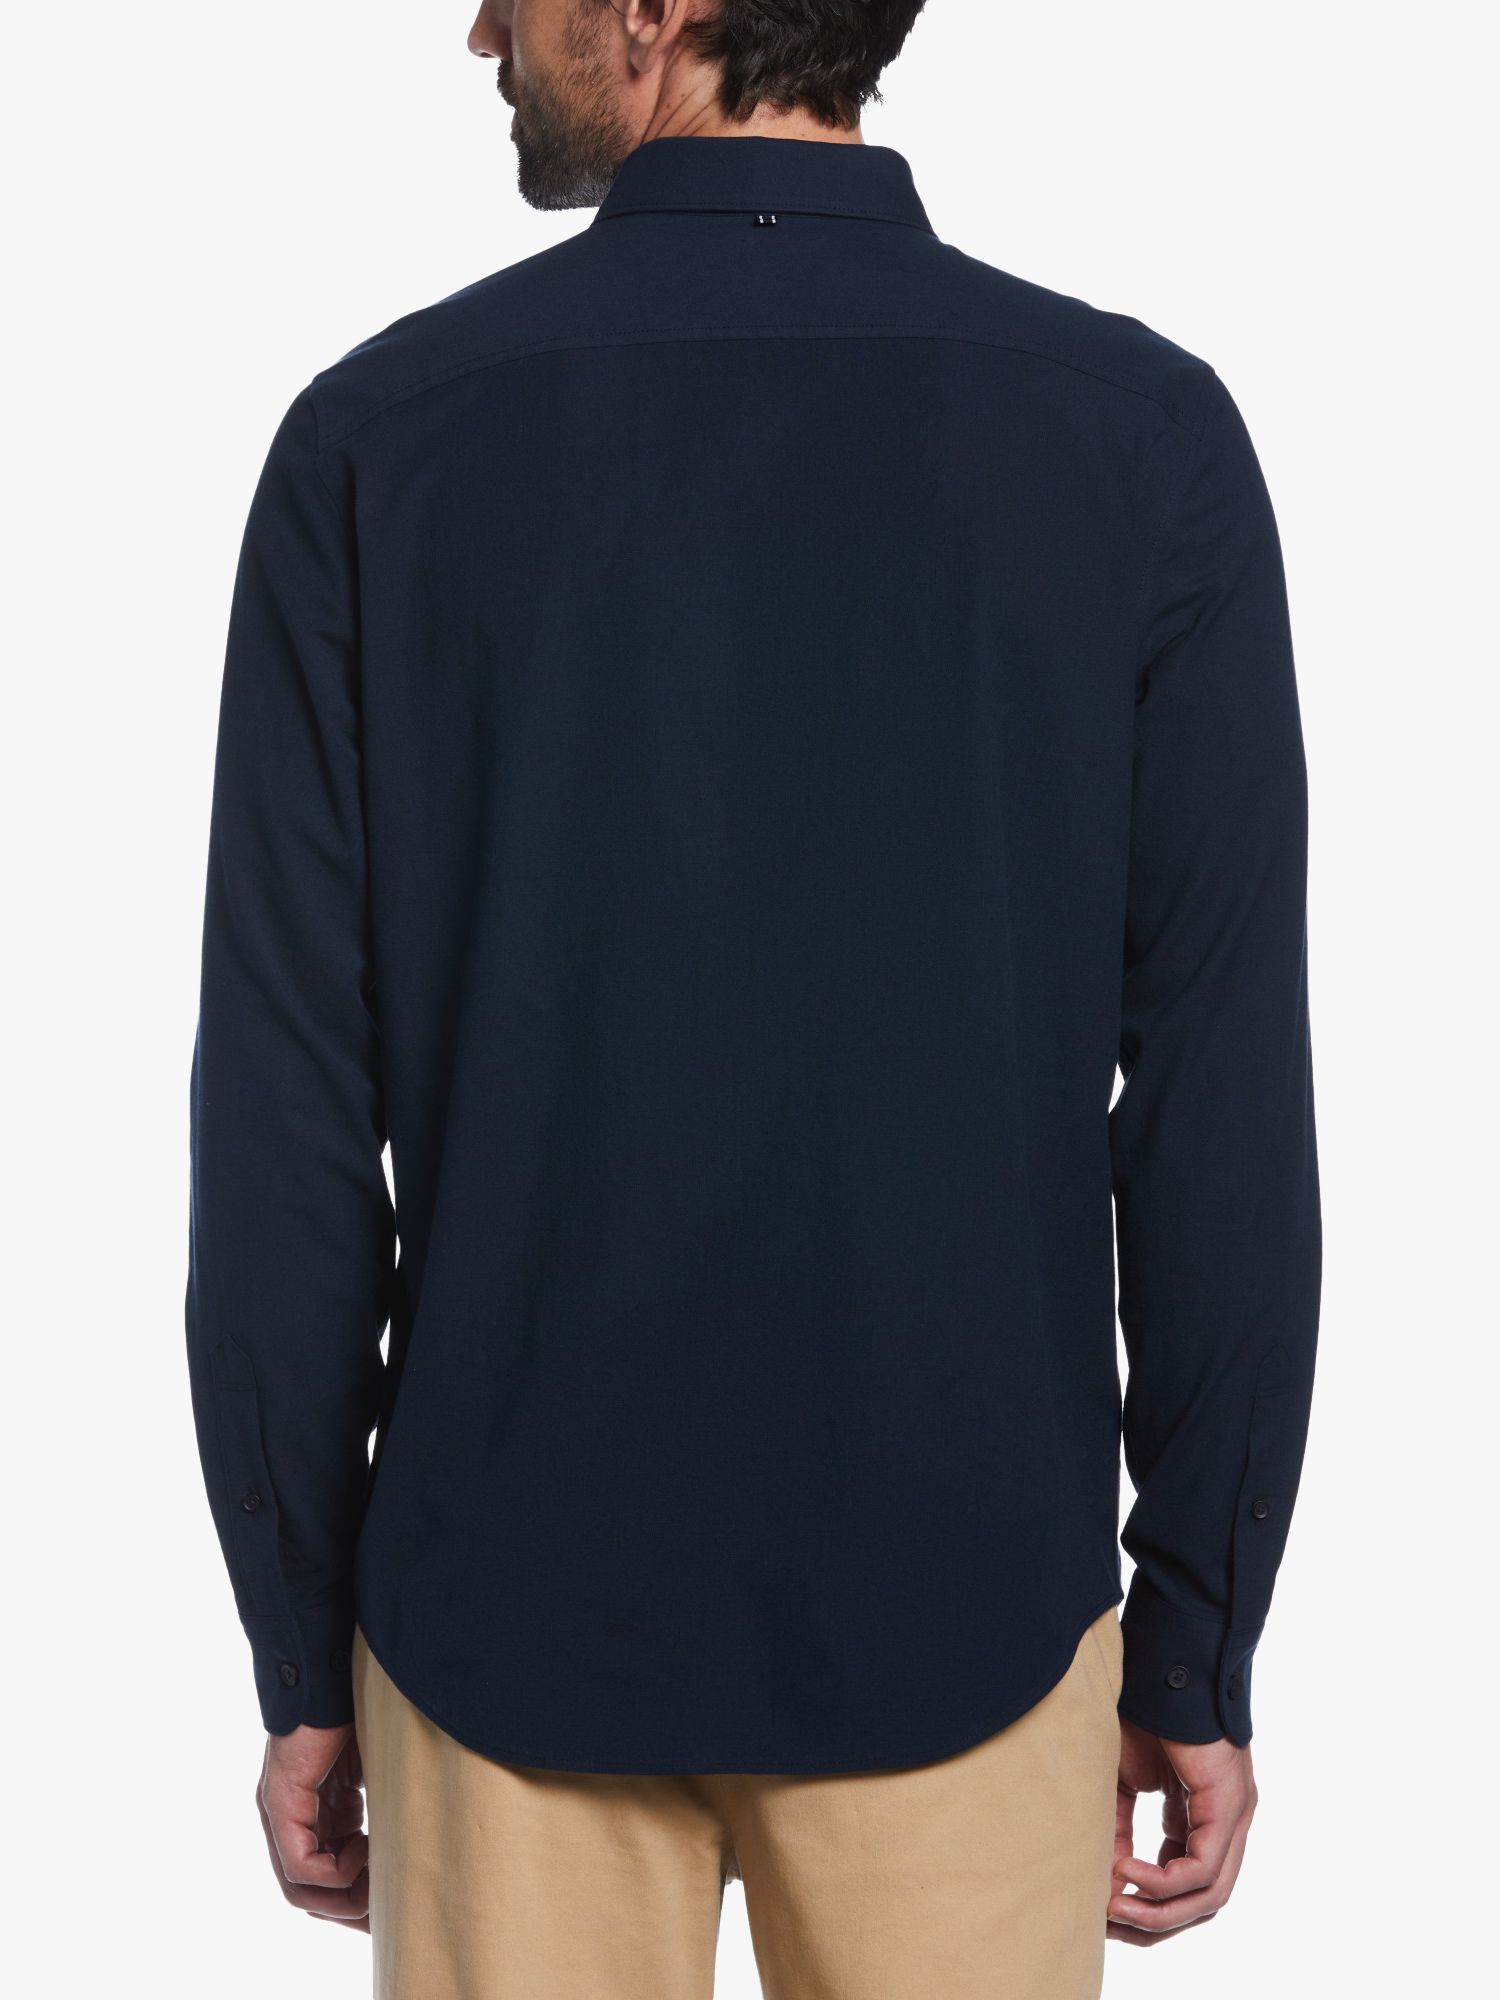 Original Penguin Oxford Long Sleeve Shirt, Dark Sapphire, XXL